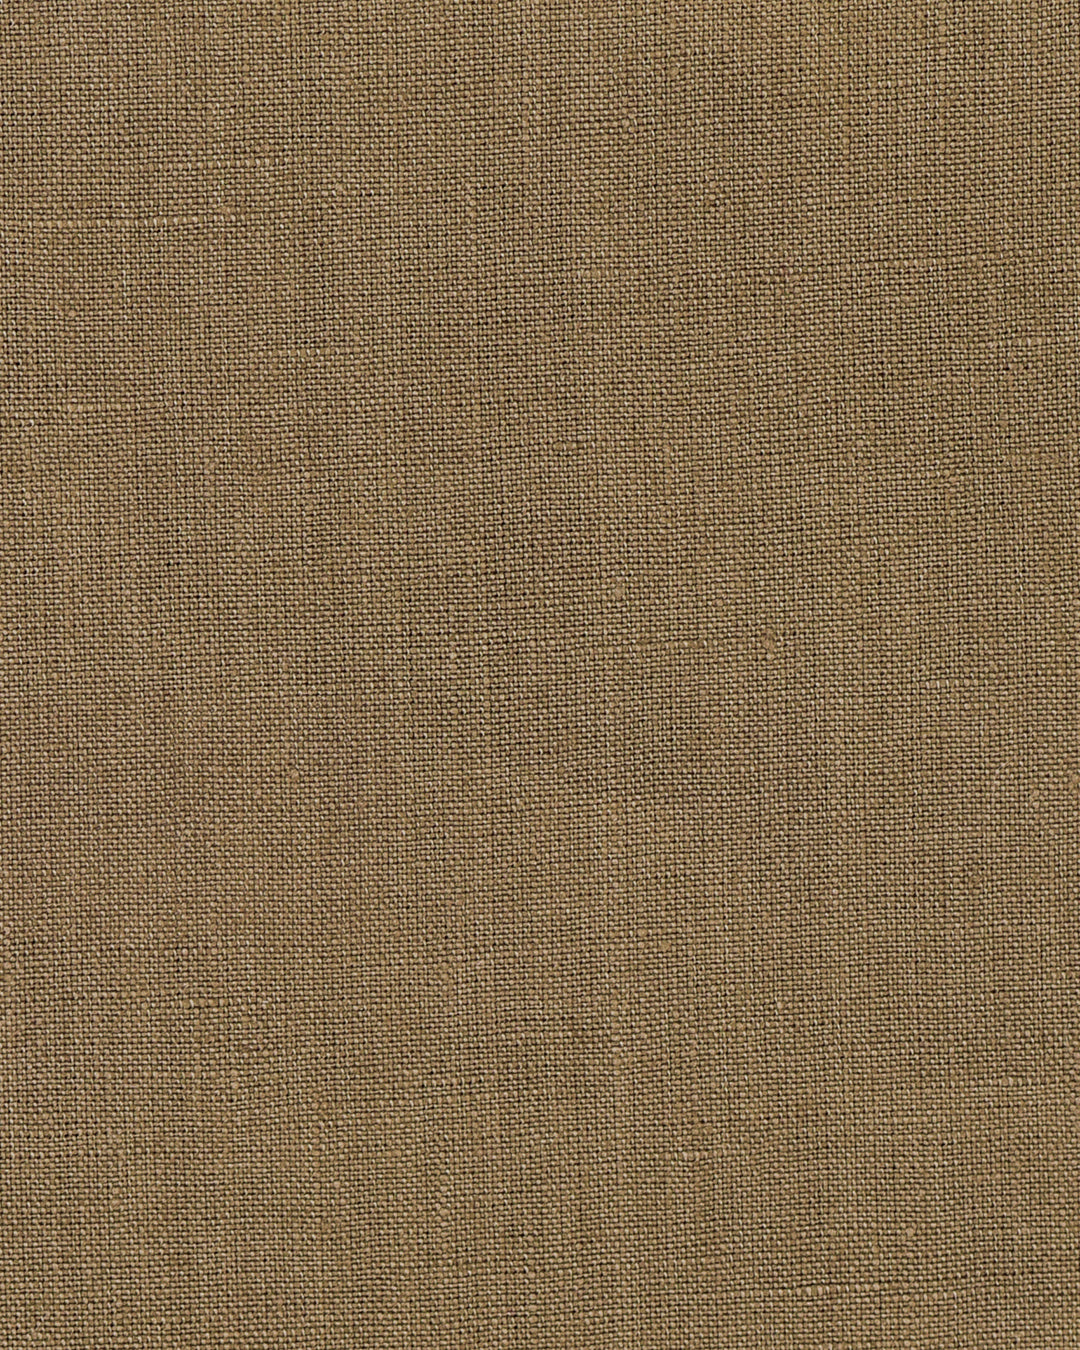 Dugdale Light Brown Linen